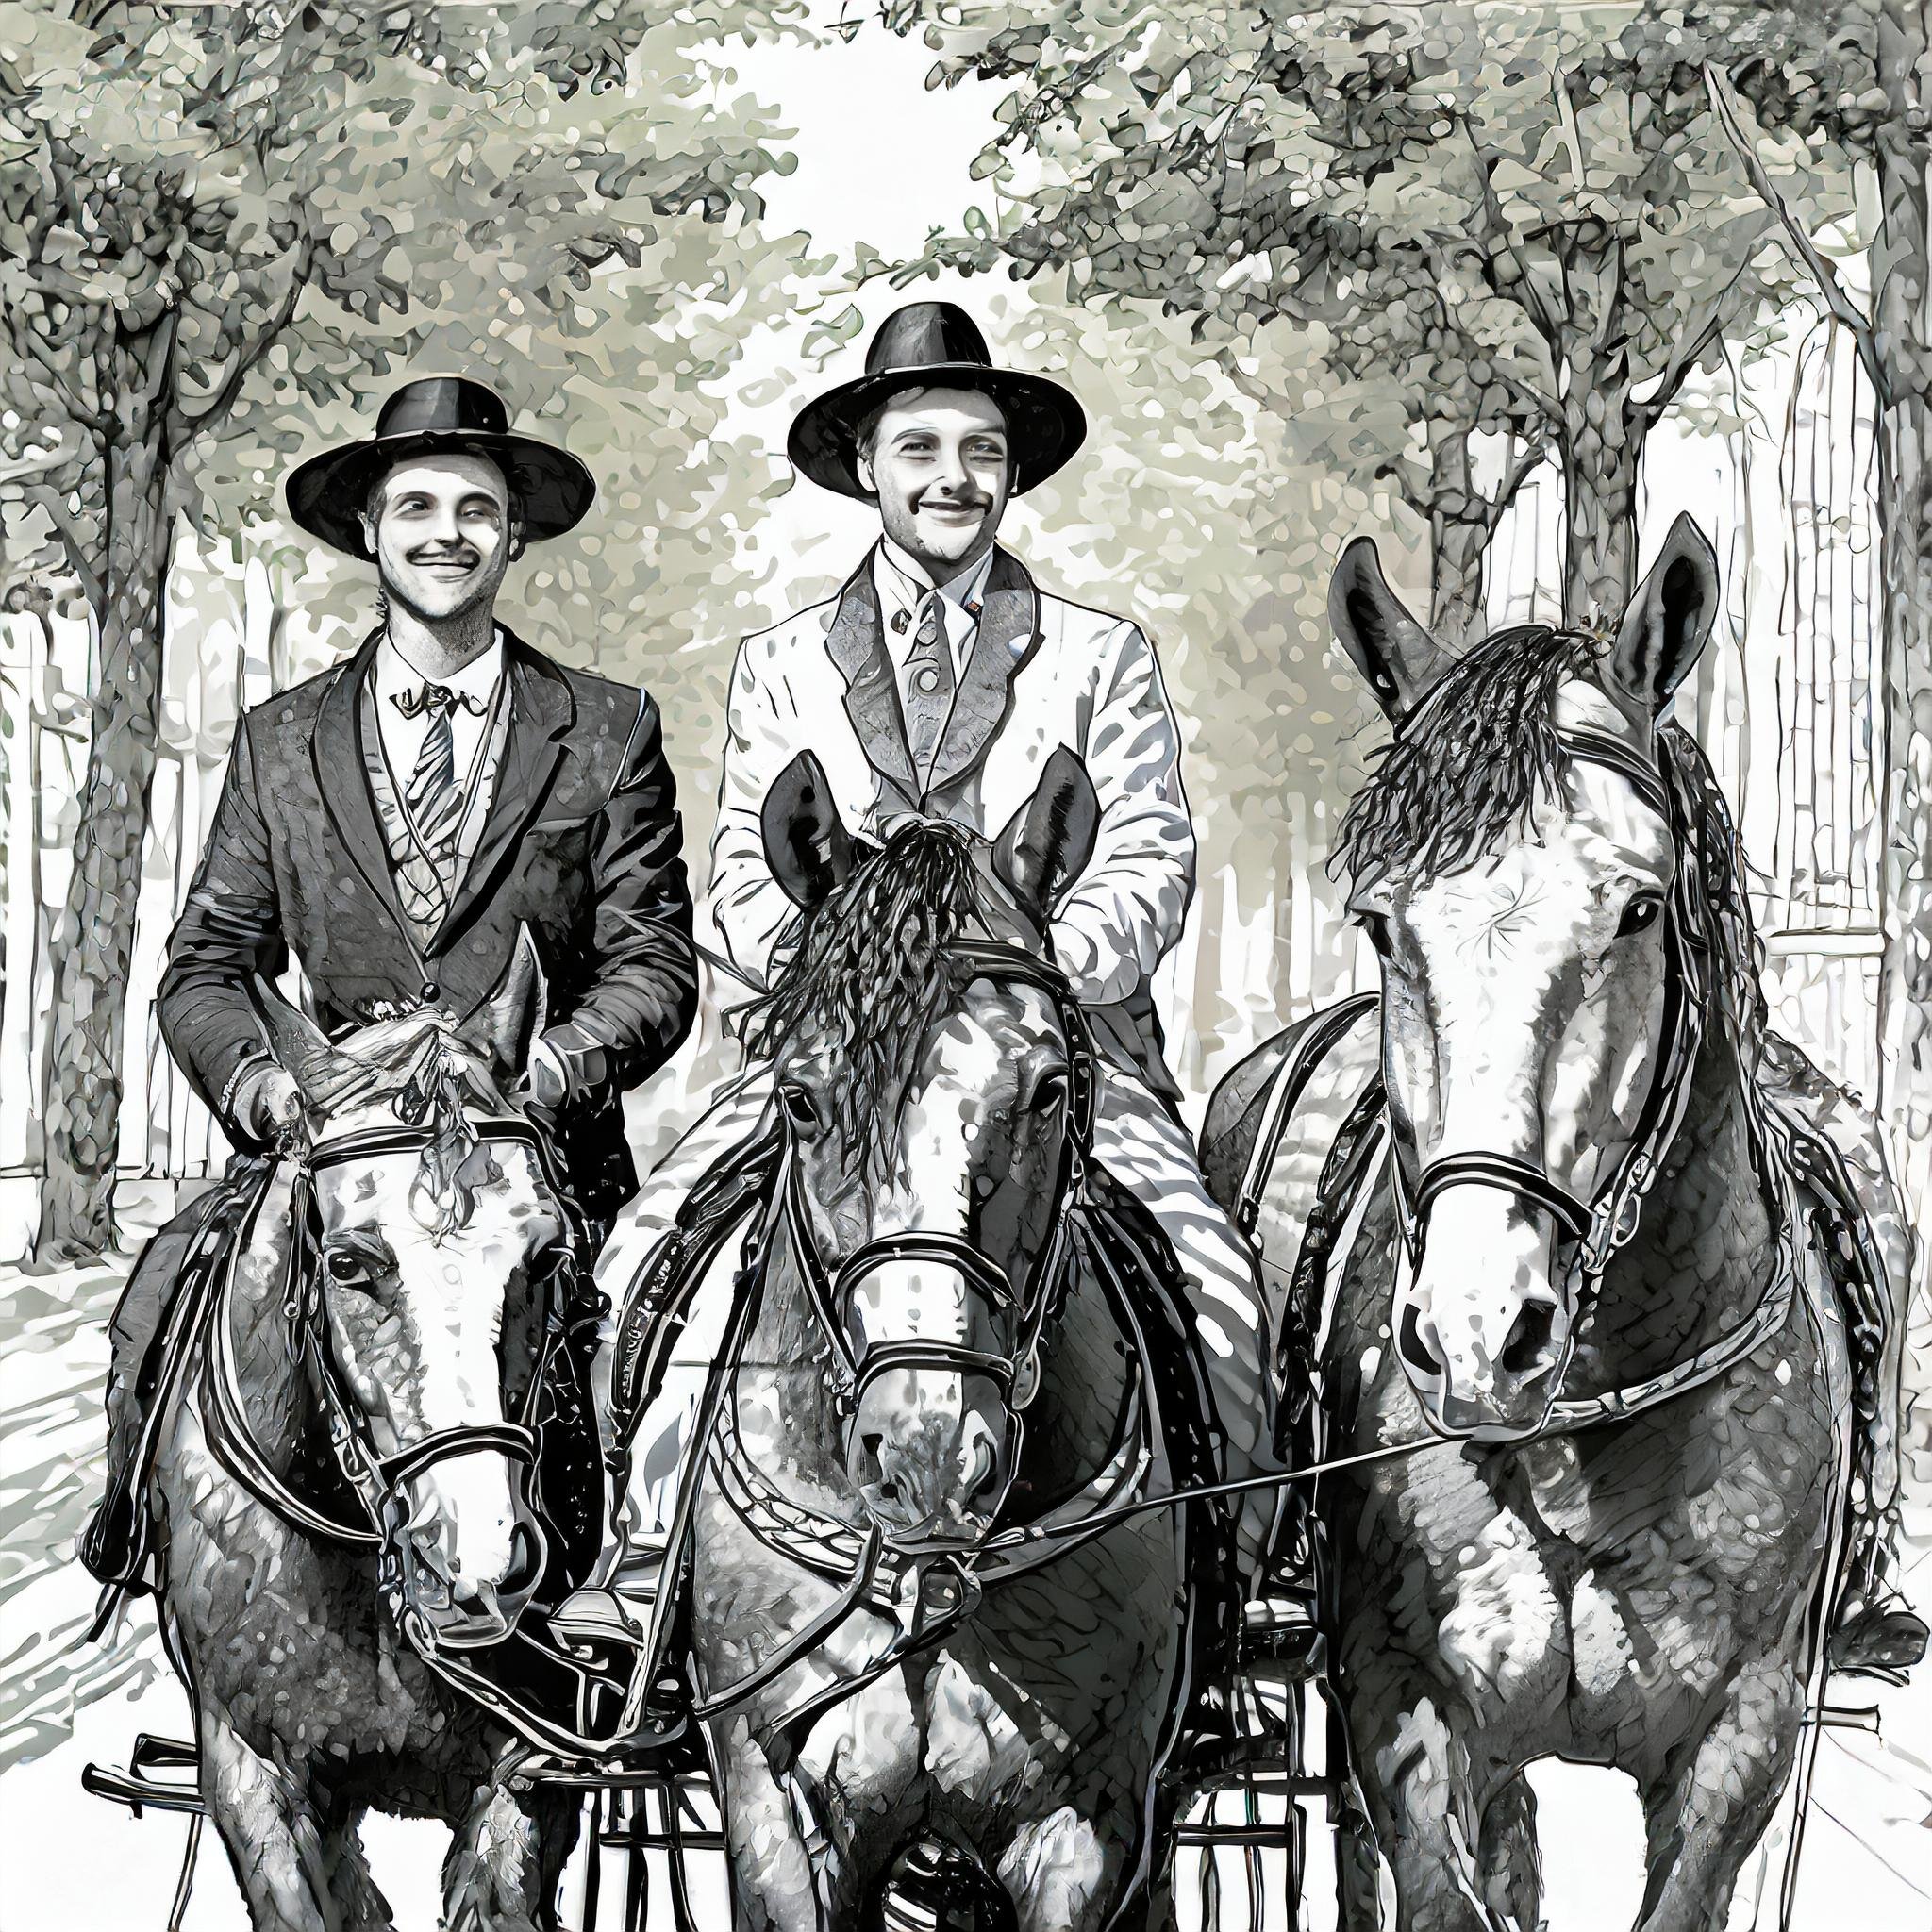 004_Firefly junge Männer sitzen auf einer Kutsche mit Pferden und bringen Bäumchen, in schwarz-weiß,